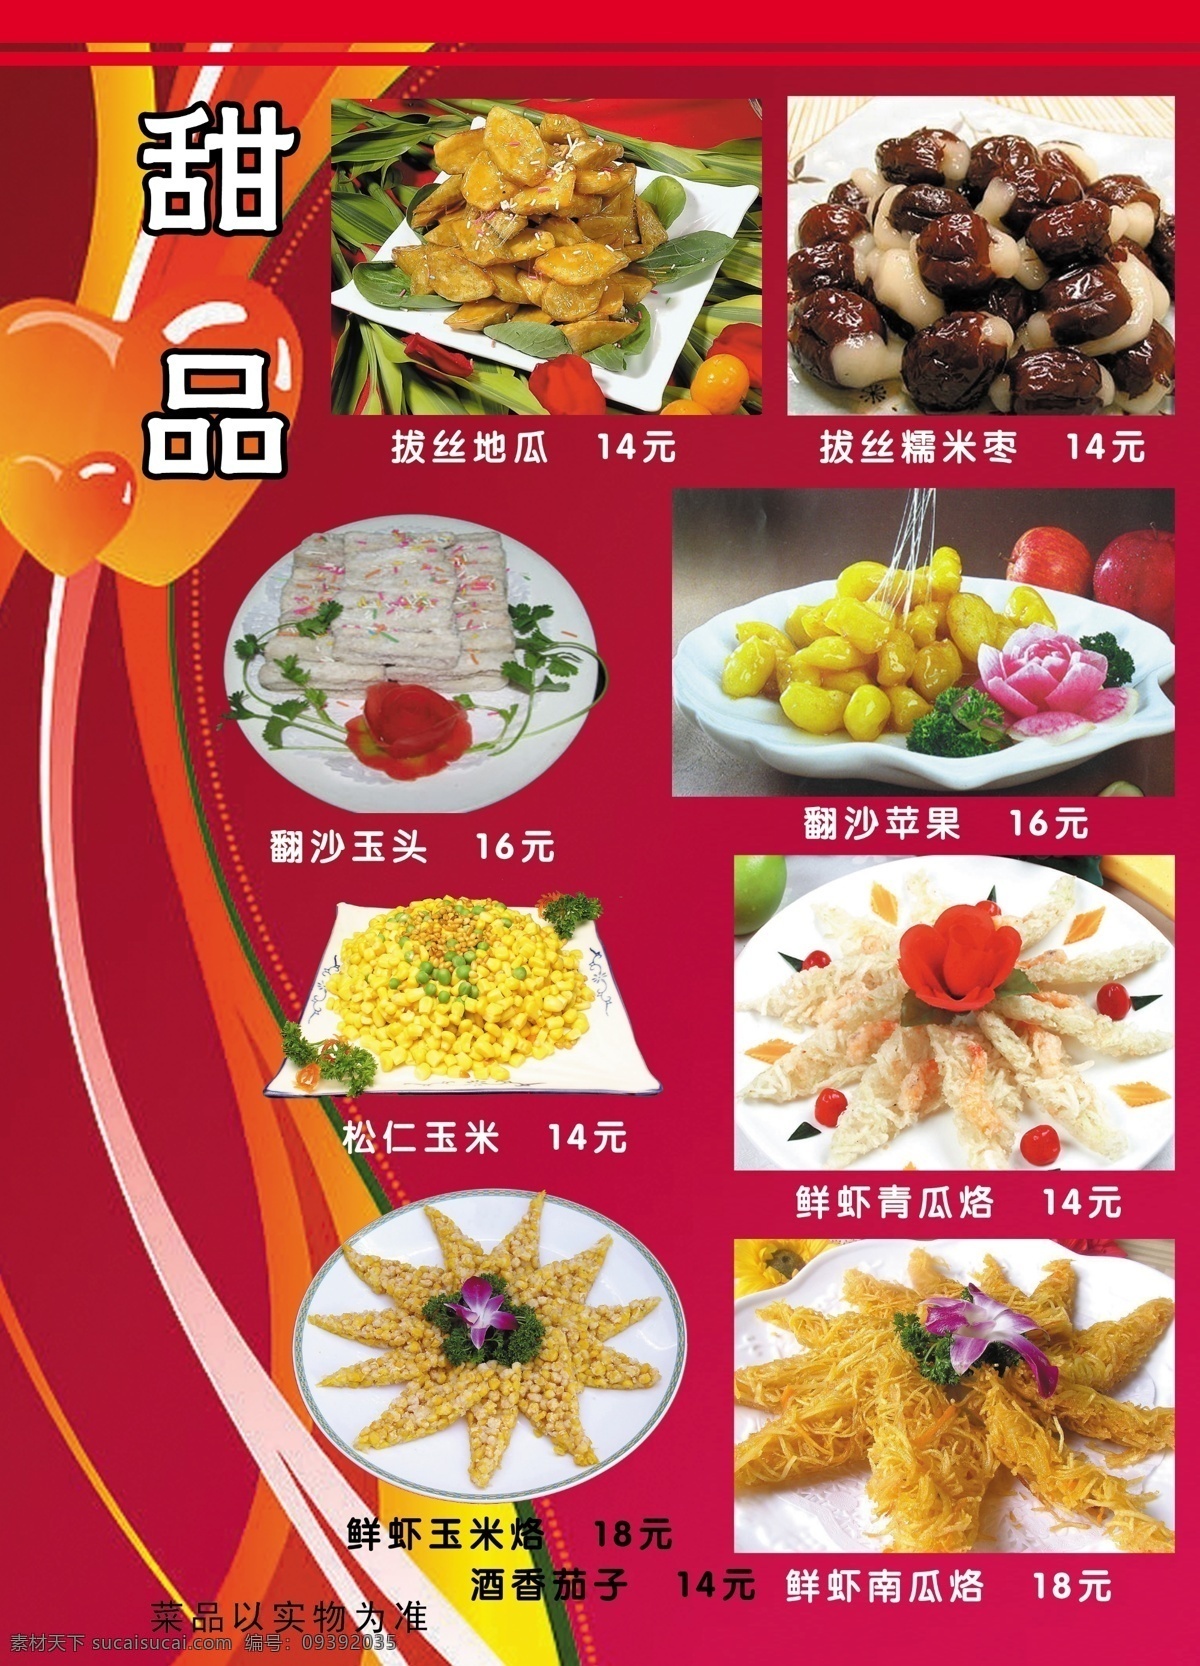 香 村 饭店 菜谱 食品餐饮 菜单菜谱 分层psd 平面广告 海报 设计素材 平面模板 psd源文件 红色